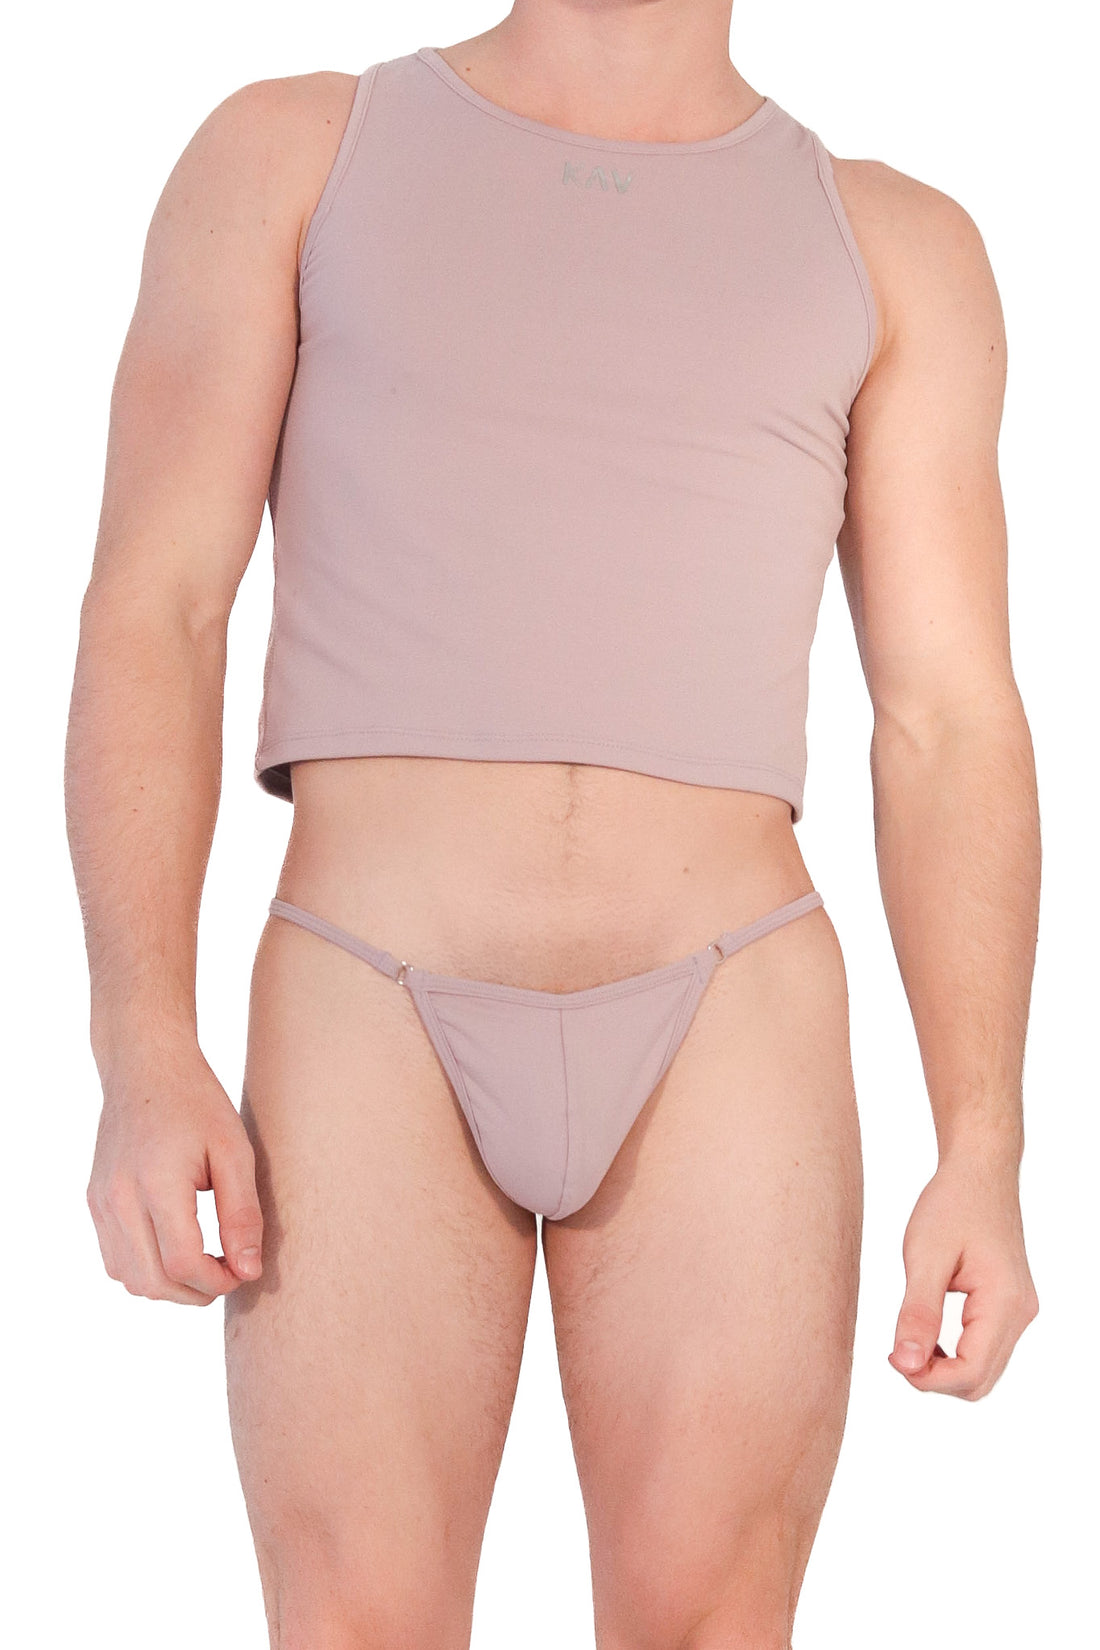 Underwear Men Bottoms Wear KAV –